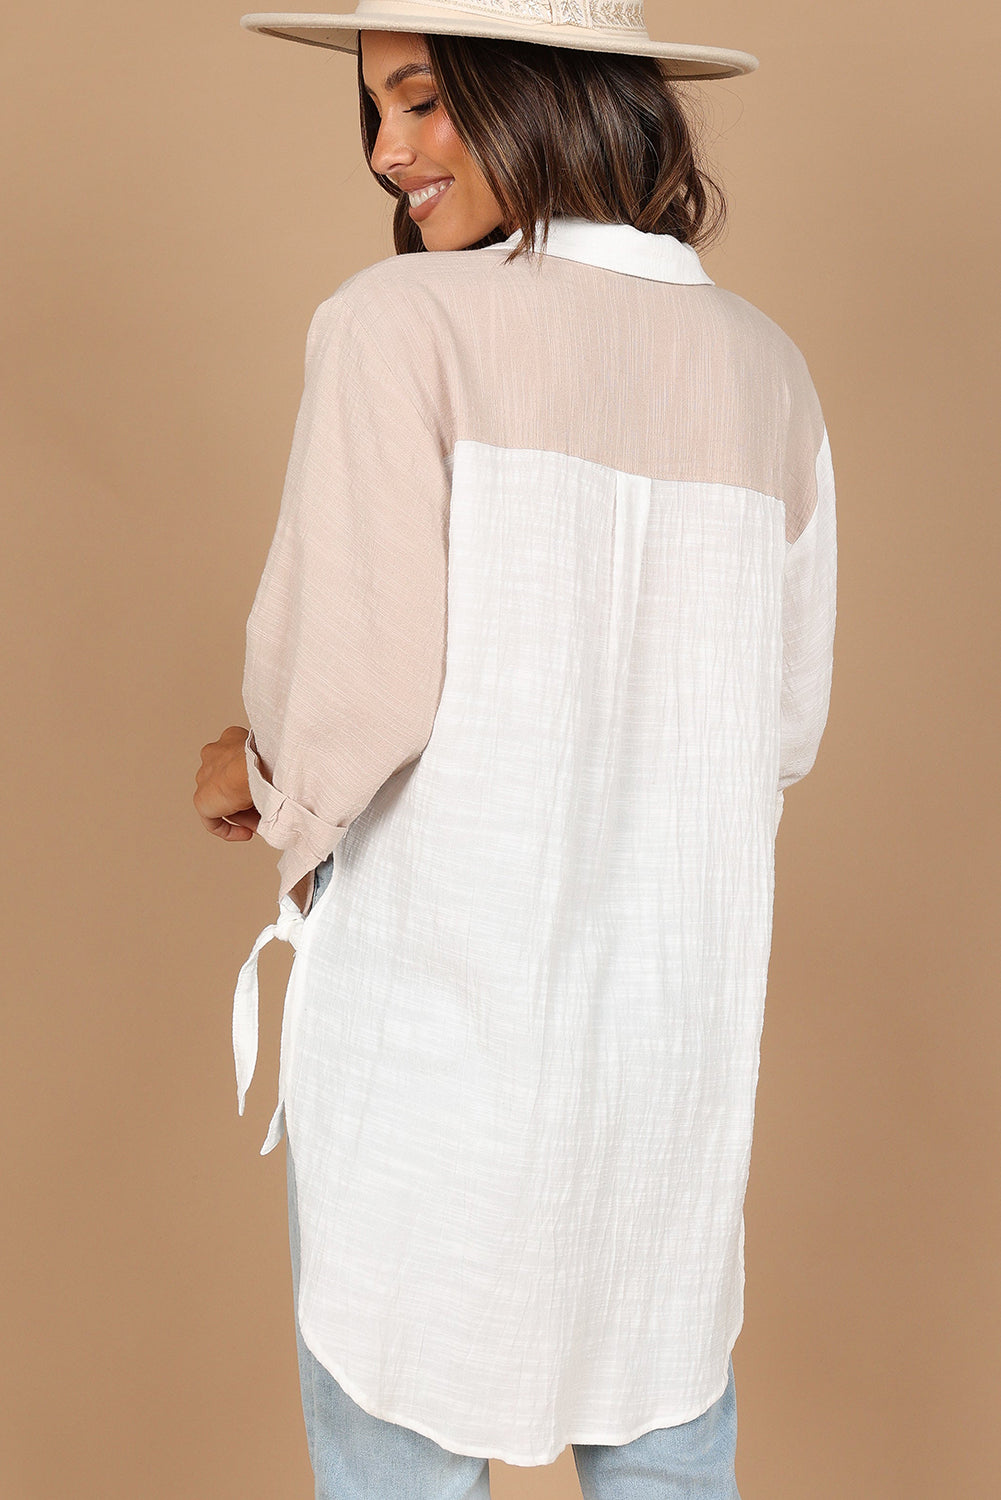 Weißes Kontrast-Colorblock-Hemd mit V-Ausschnitt, Kragen und abgerundetem Saum